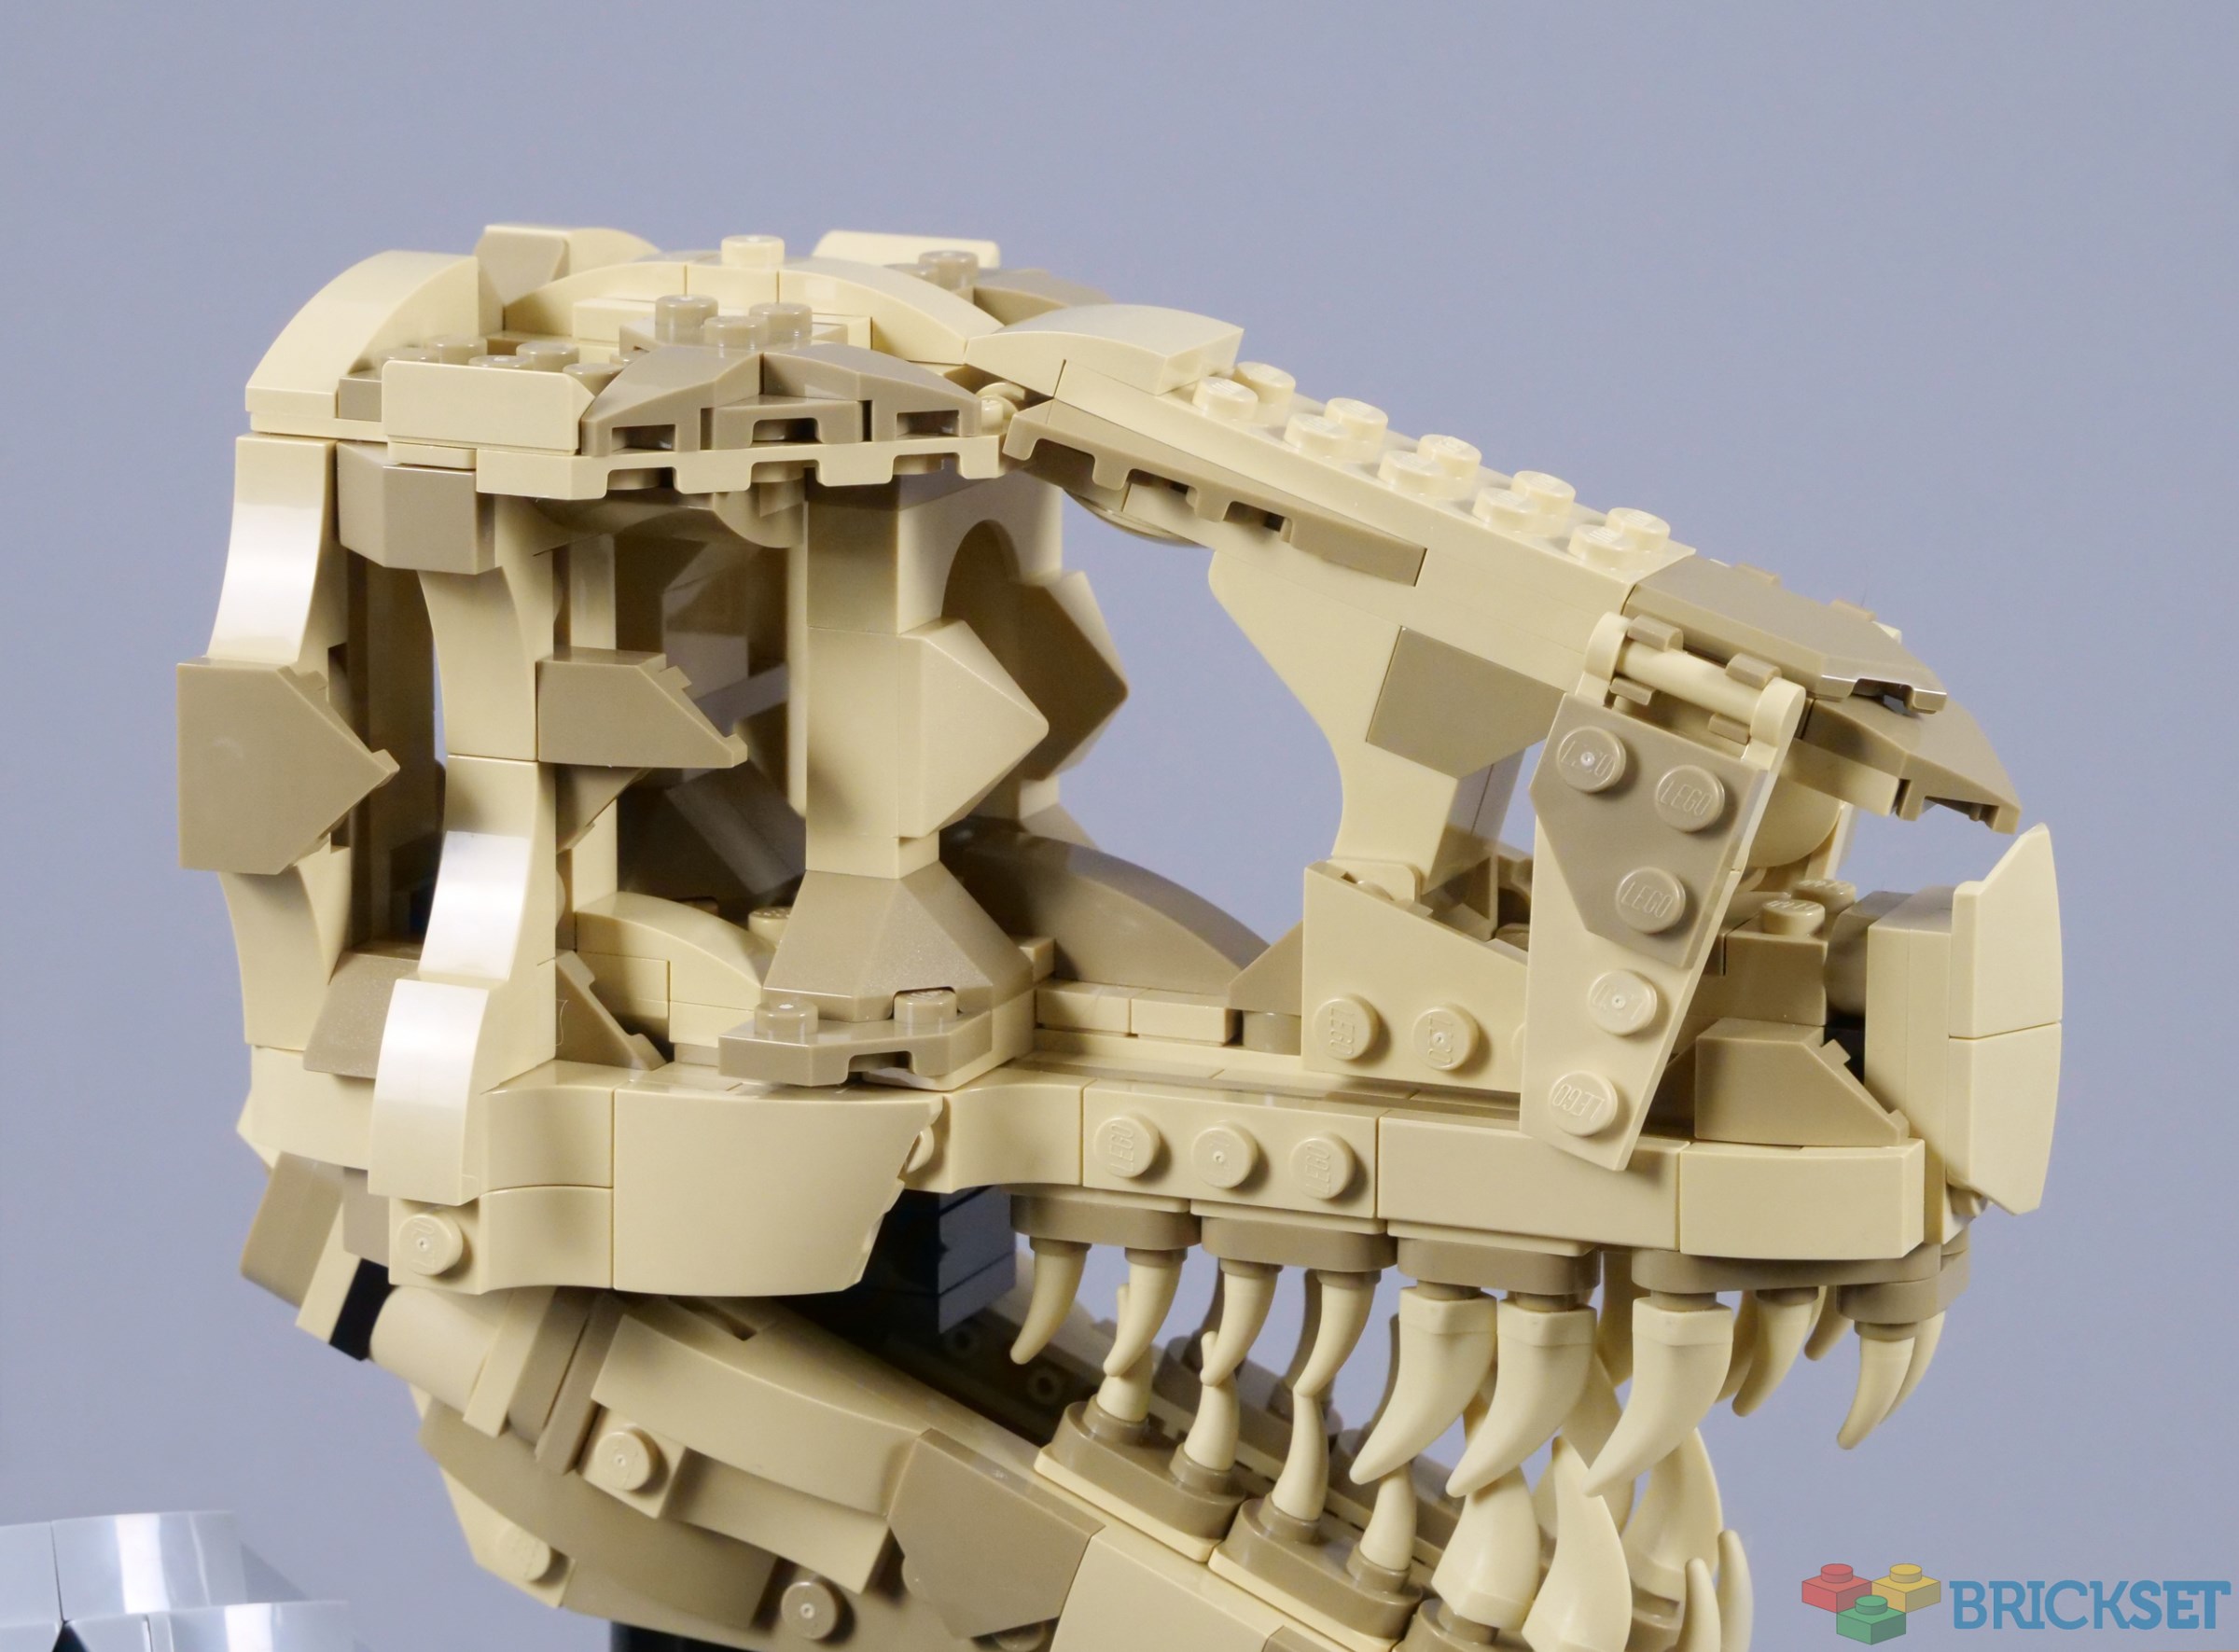 76964: Dinosaur Fossils: T. rex Skull Set Review - BricksFanz